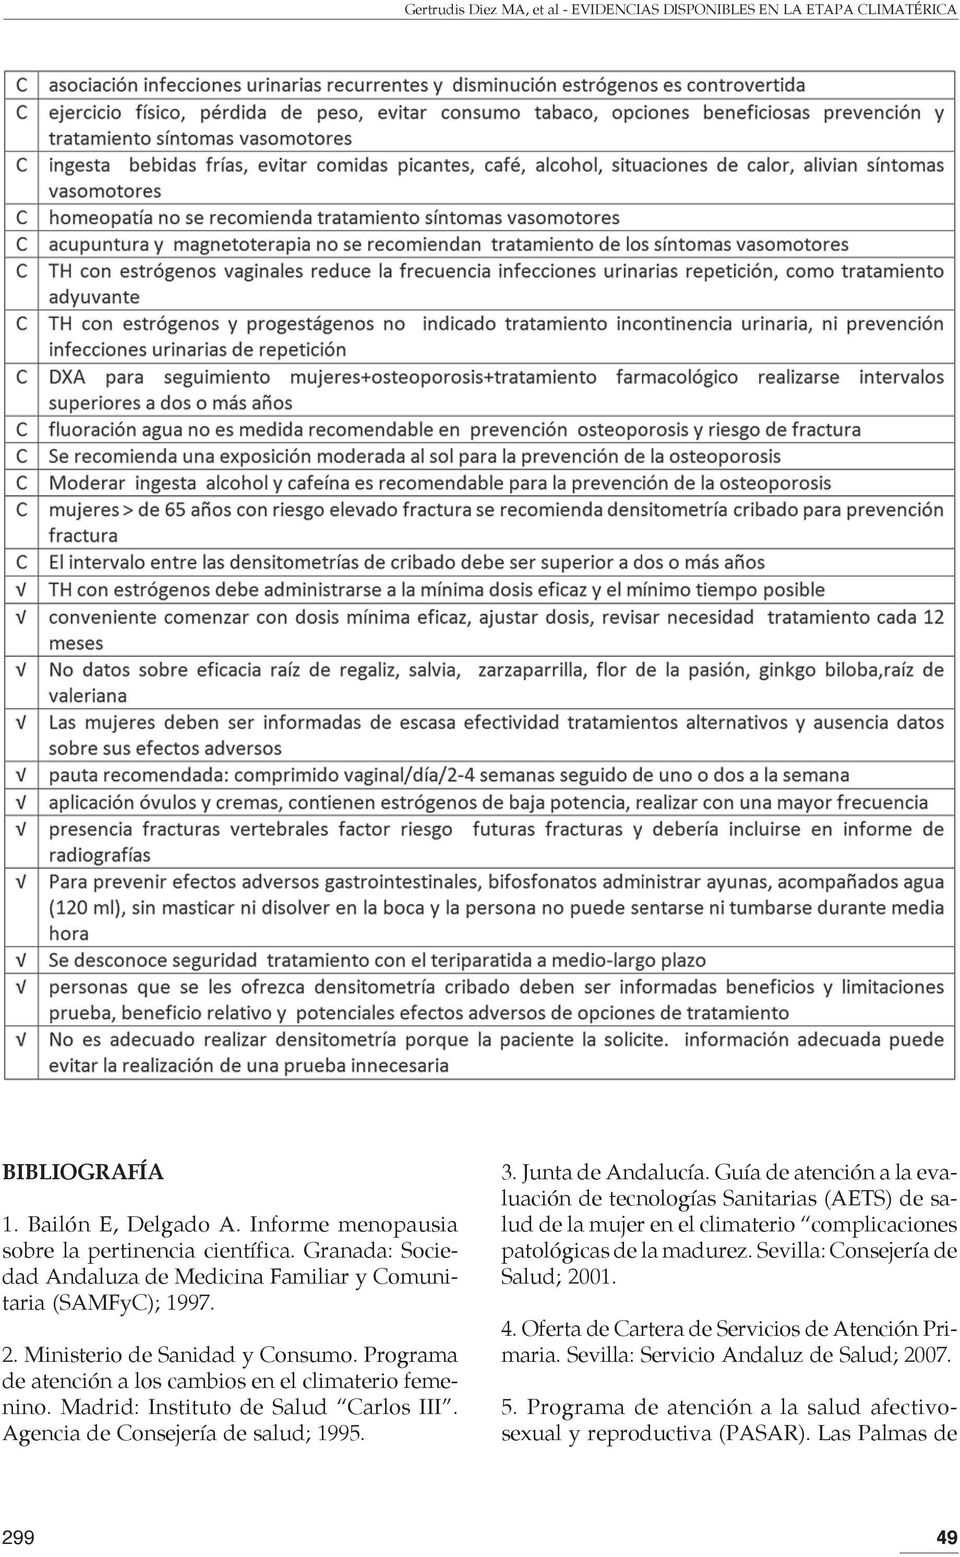 Madrid: Instituto de Salud Carlos III. Agencia de Consejería de salud; 1995. 3. Junta de Andalucía.